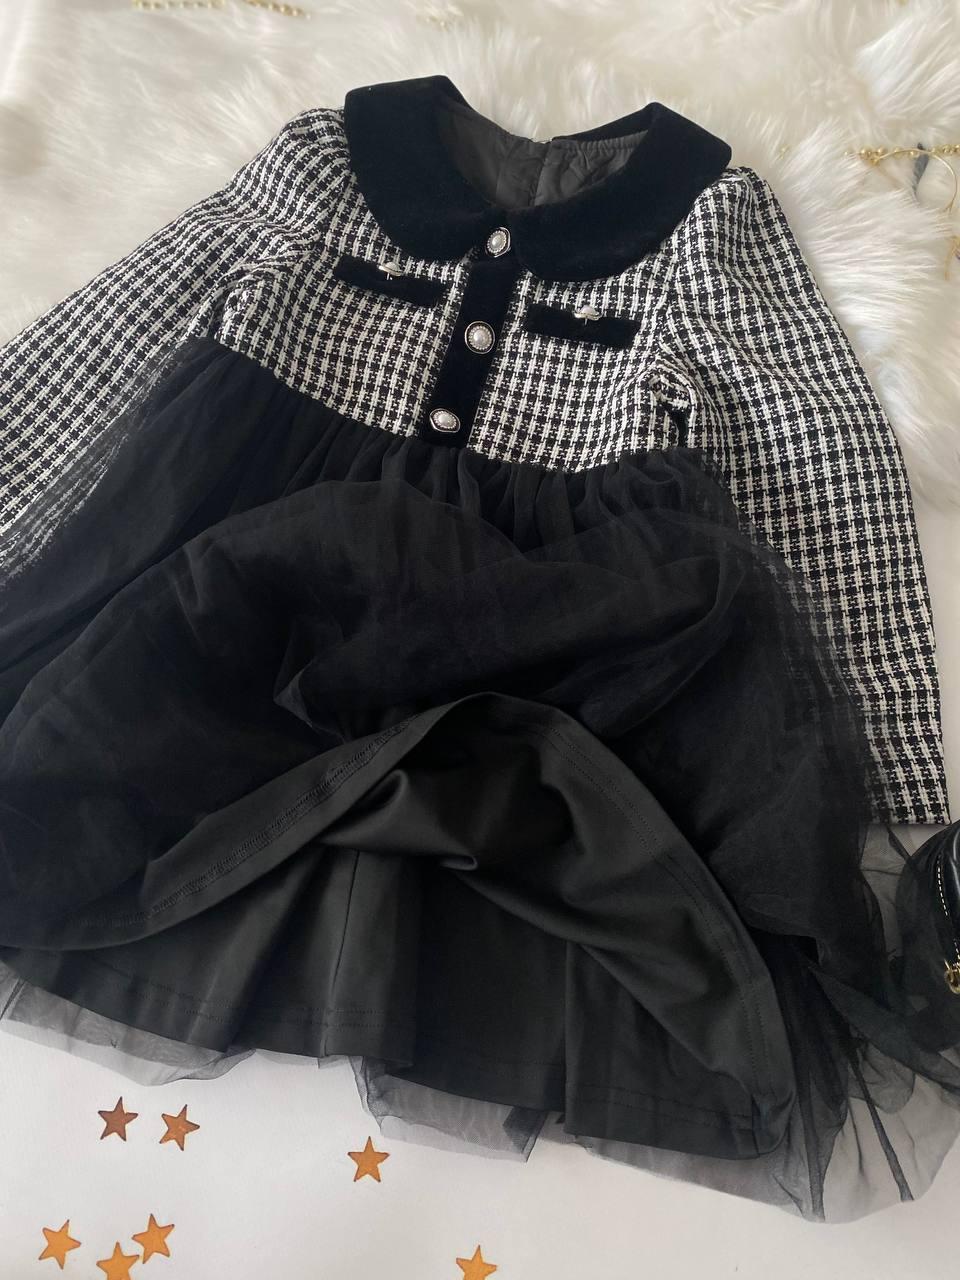 Шкільна сукня для дівчинки твідова Чорна 22032 20, XIACZH, Черный, Для девочек, Весна Осень, 104